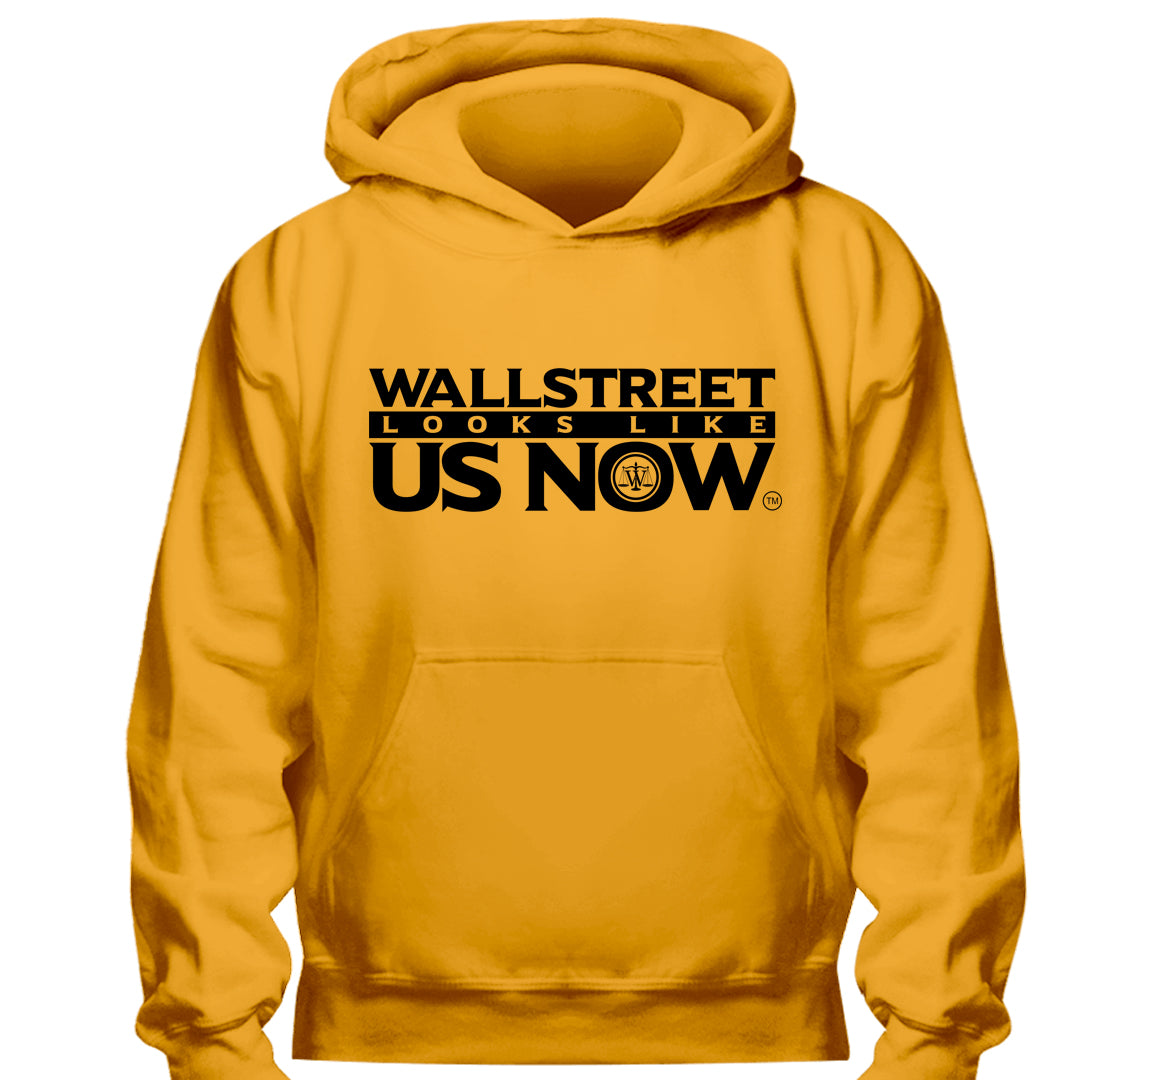 Wall Street Looks Like Us Now™ Hoodie